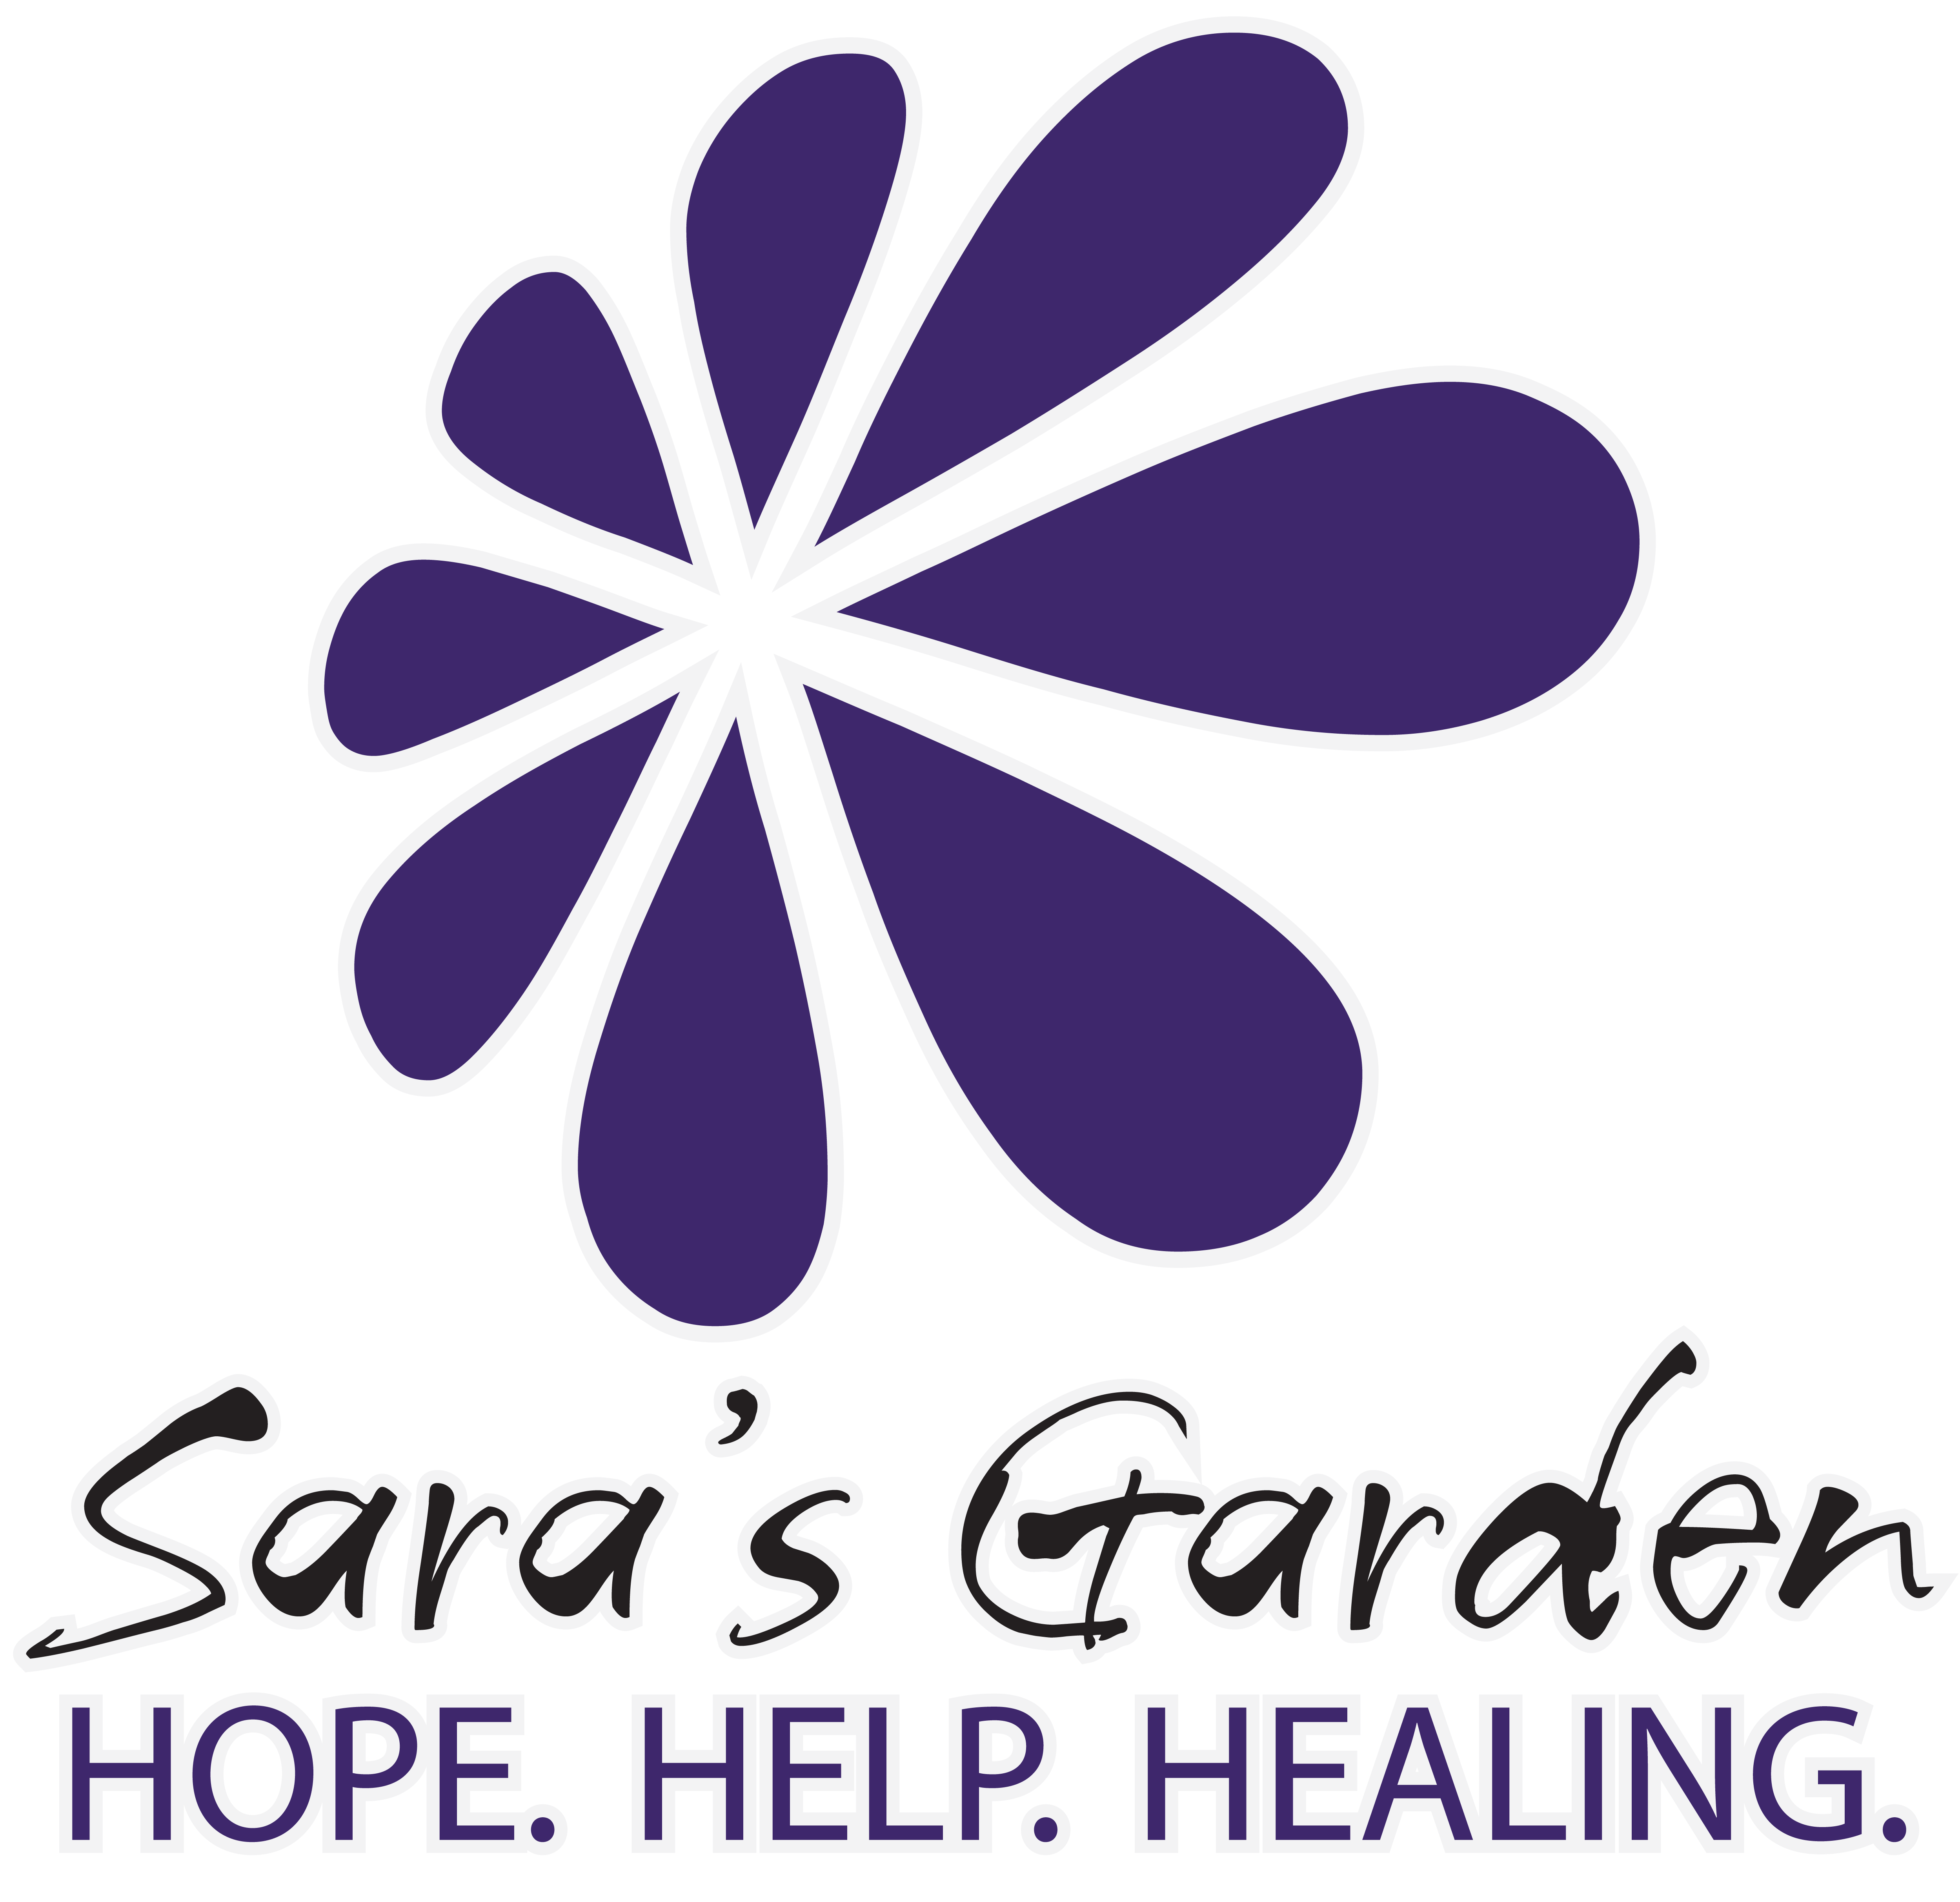 Sara's Garden logo